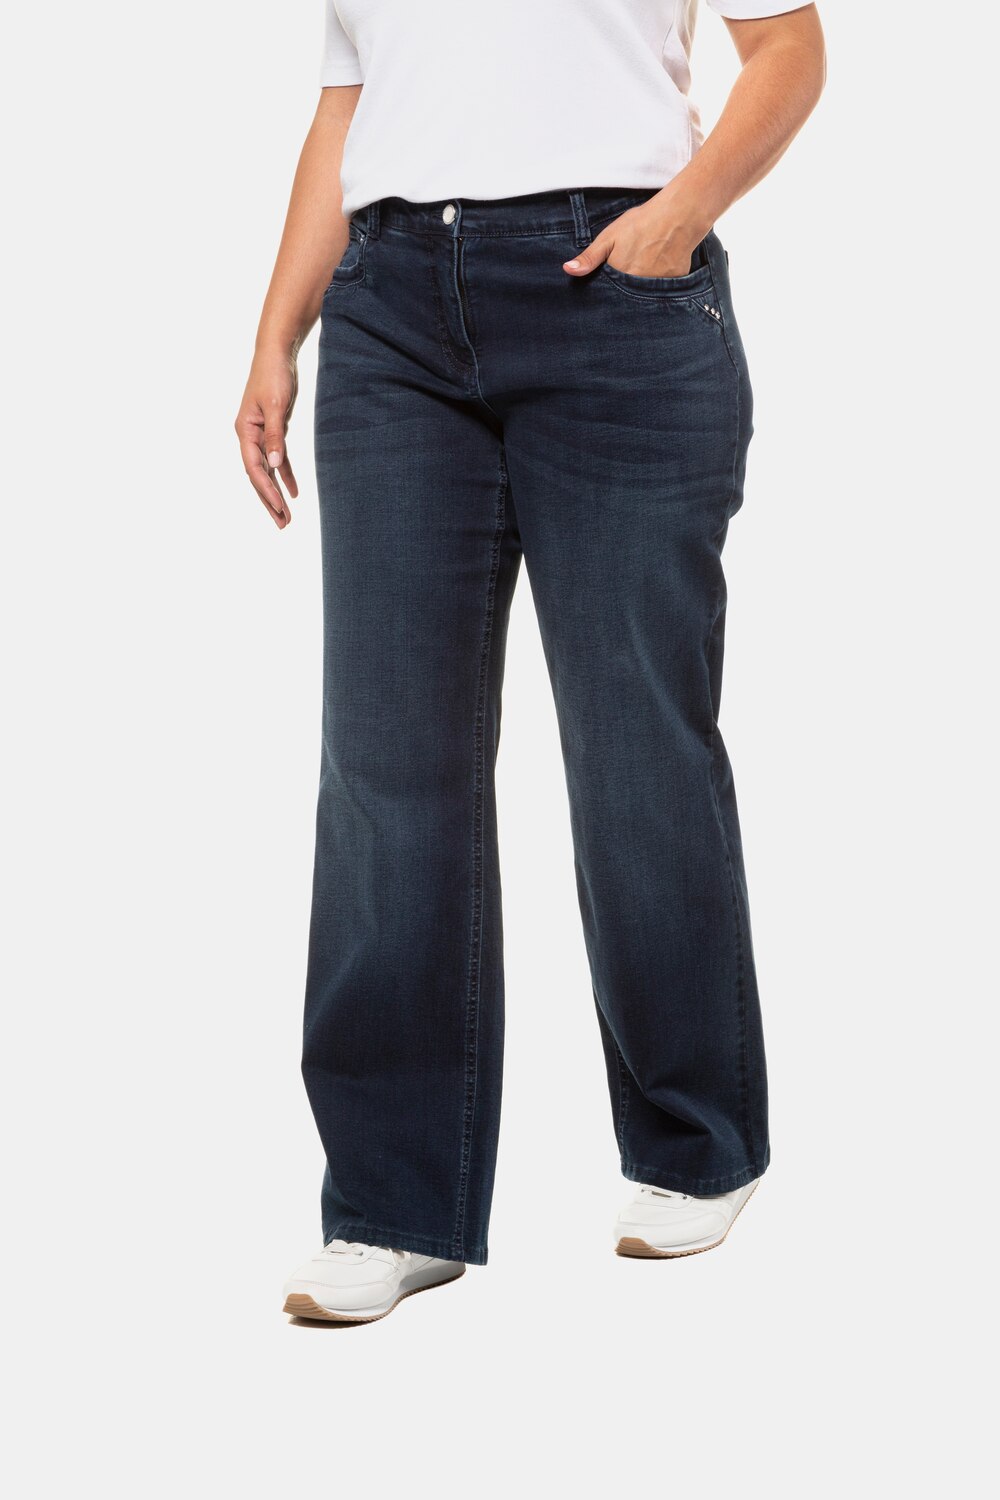 Grote Maten jeans, Dames, blauw, Maat: 44, Katoen, Ulla Popken